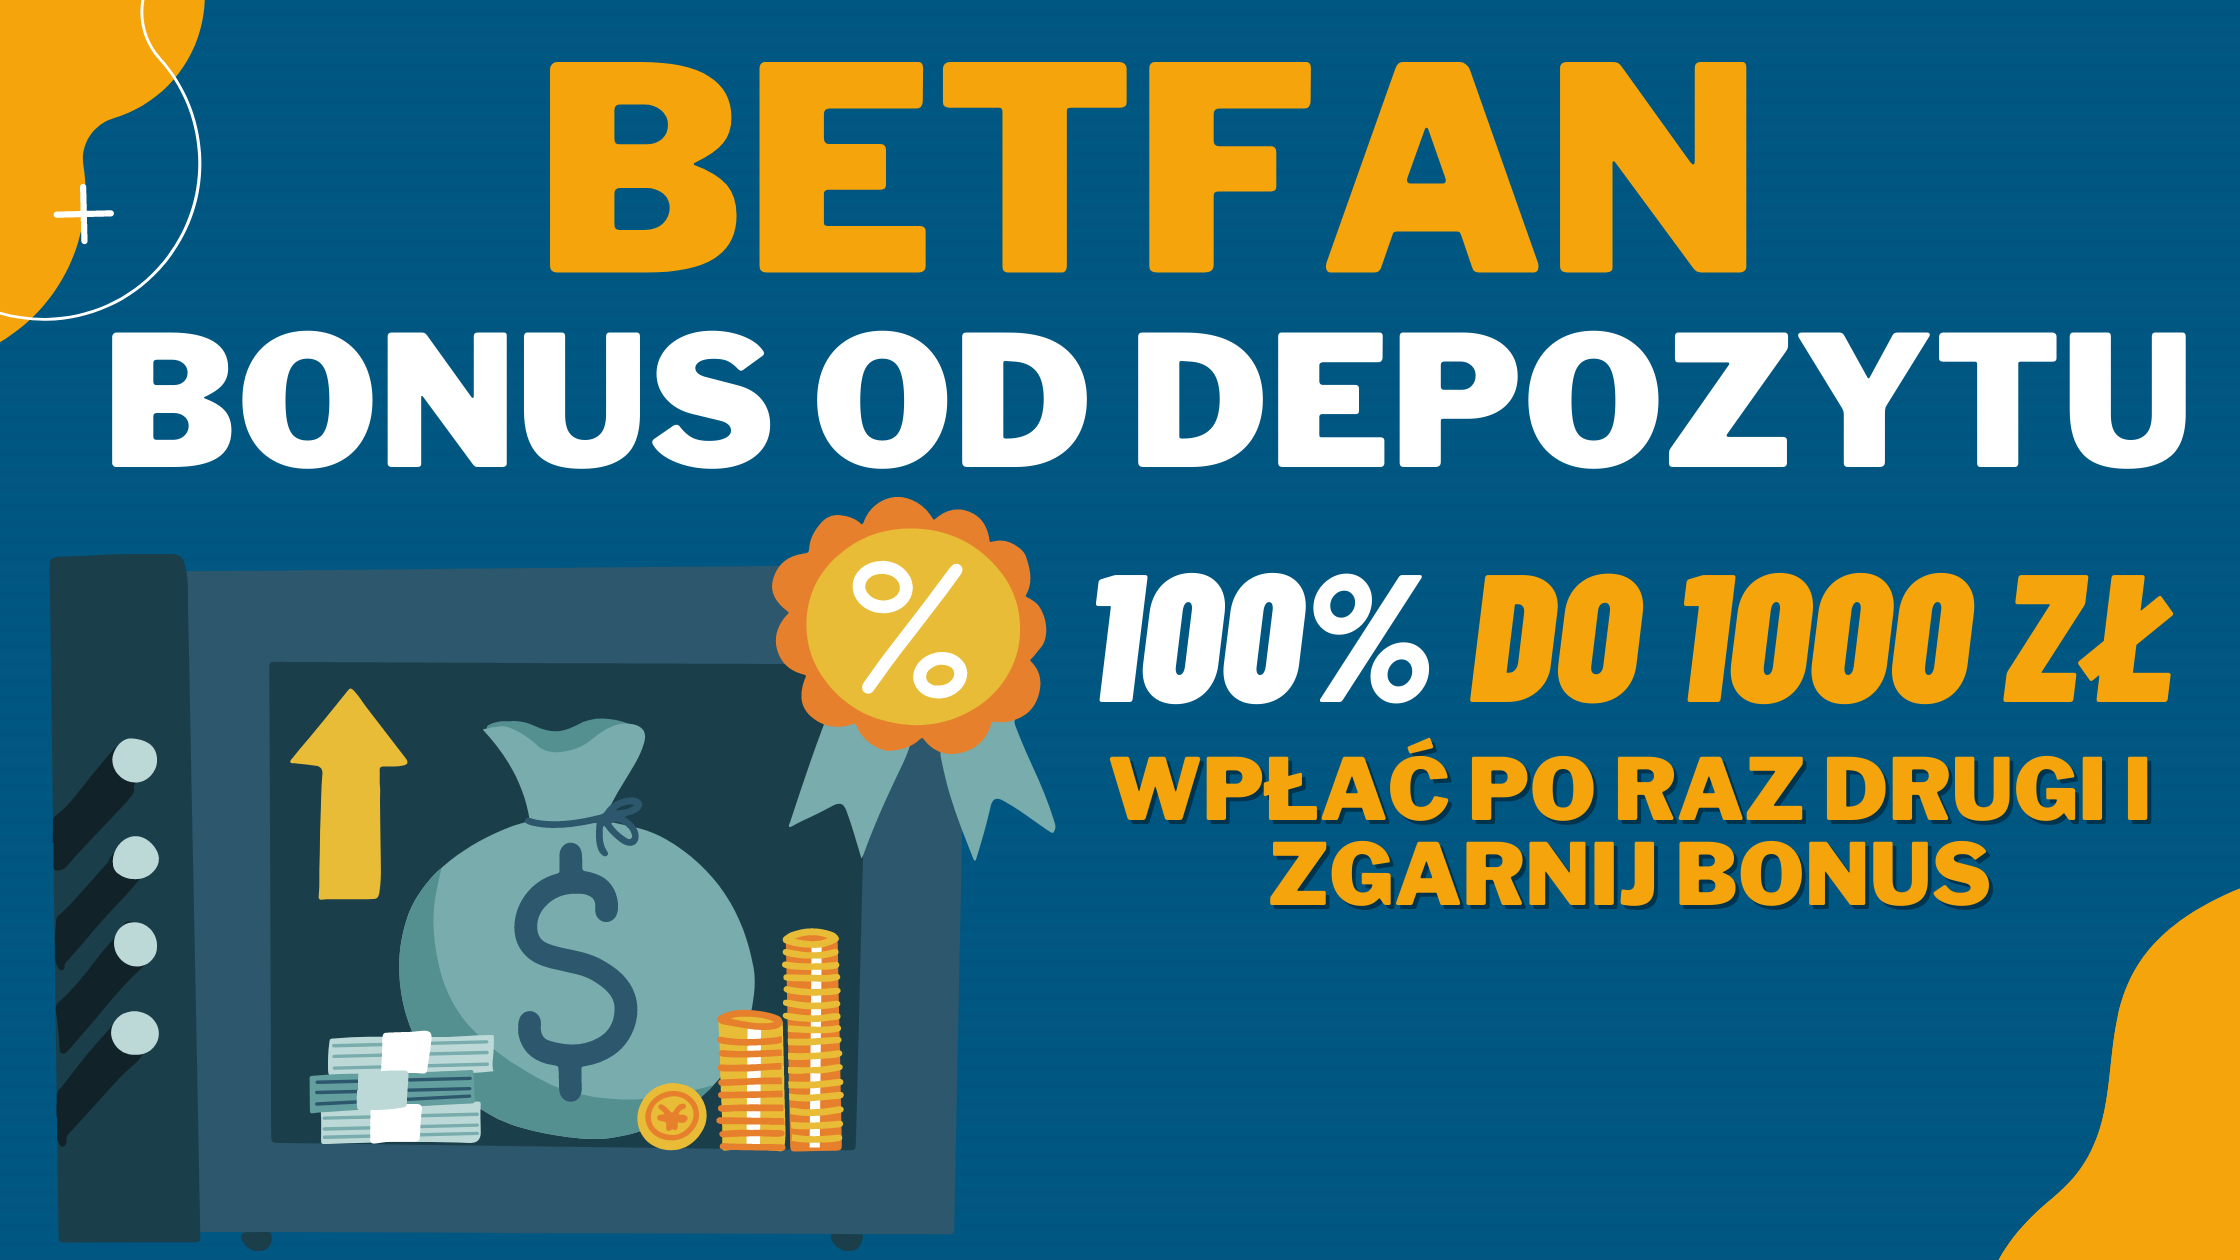 Betfan bonus od depozytu 100% do 1000 złotych